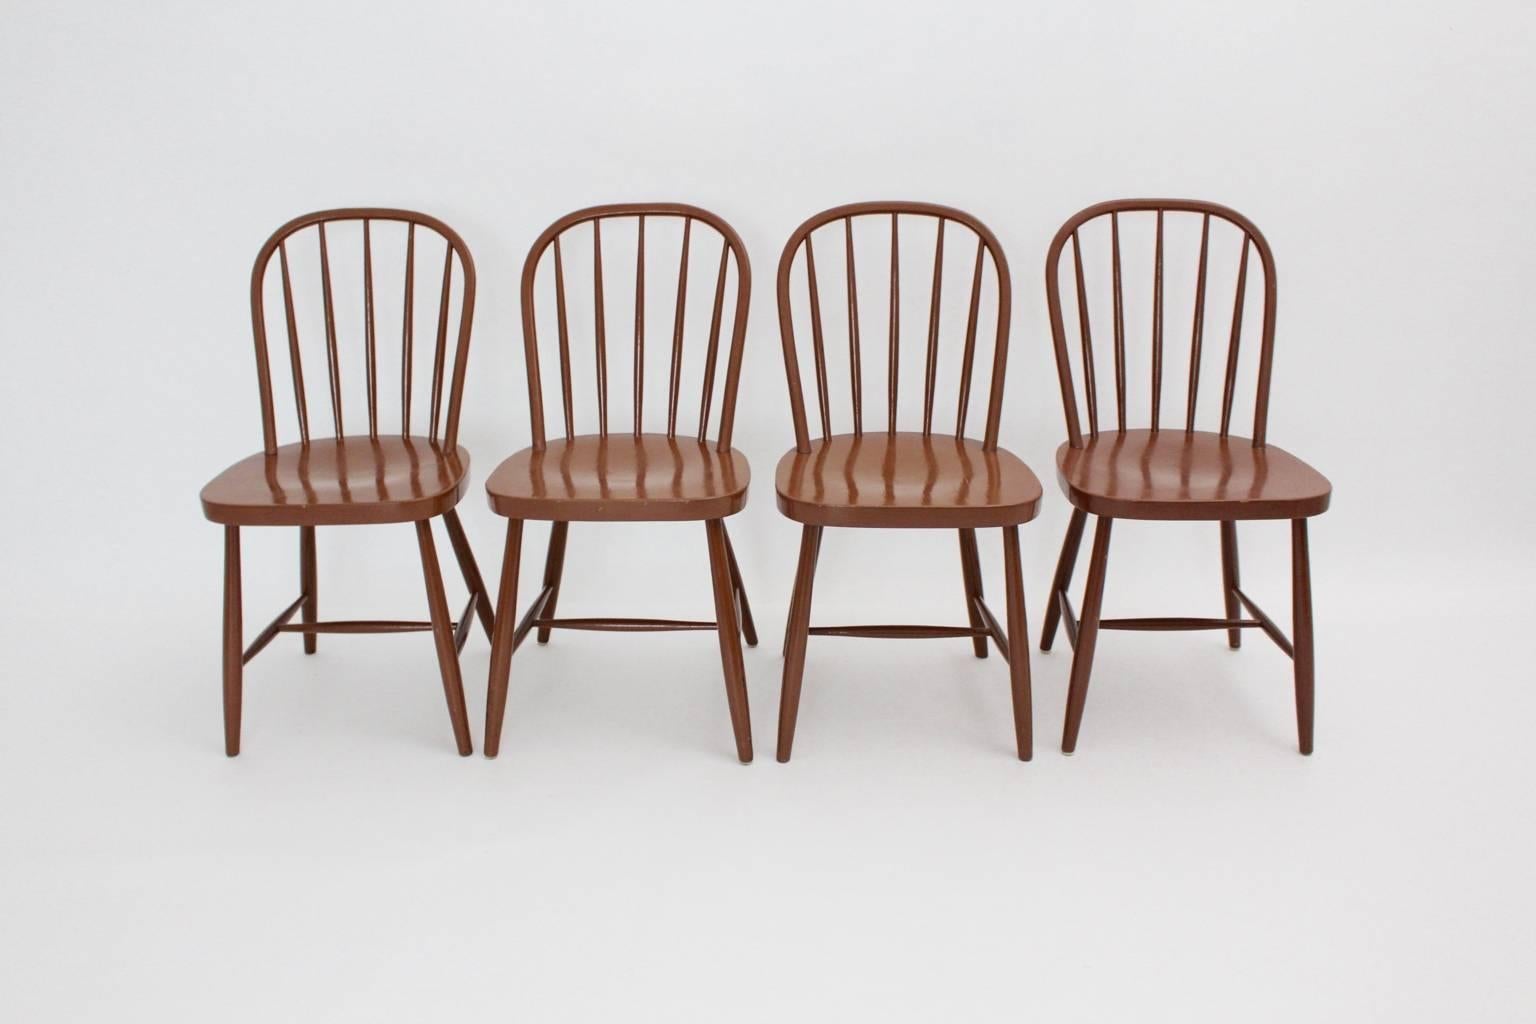 Art Deco Vintage Windsor Stühle oder Esszimmerstühle Josef Frank zugeschrieben um 1930 in Wien und ausgeführt von Thonet-Mundus. Es ist mit dem Label eines Unternehmens versehen.
Die Stühle aus braun lackiertem Buchenholz und Bugholz sind stabil und